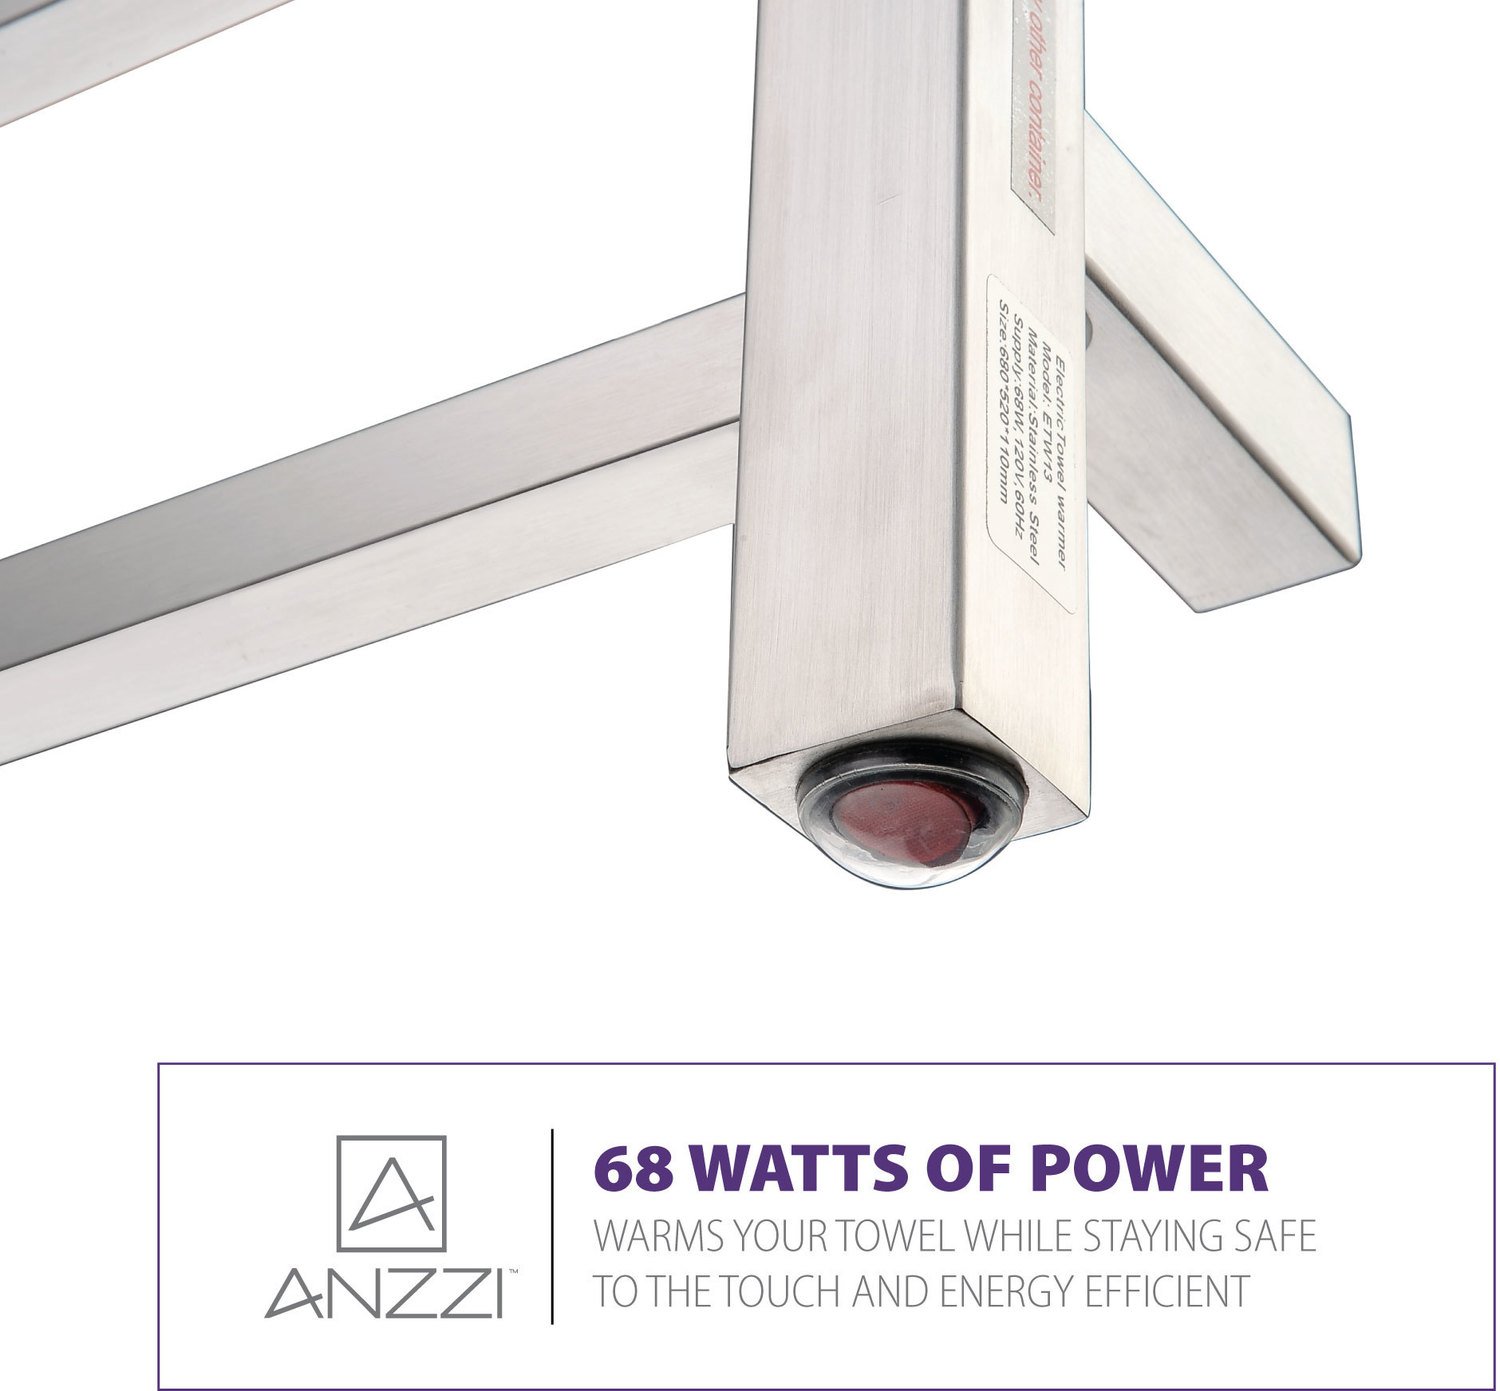  Anzzi BATHROOM - Towel Warmers - Wall Mounted Towel Warmers Nickel